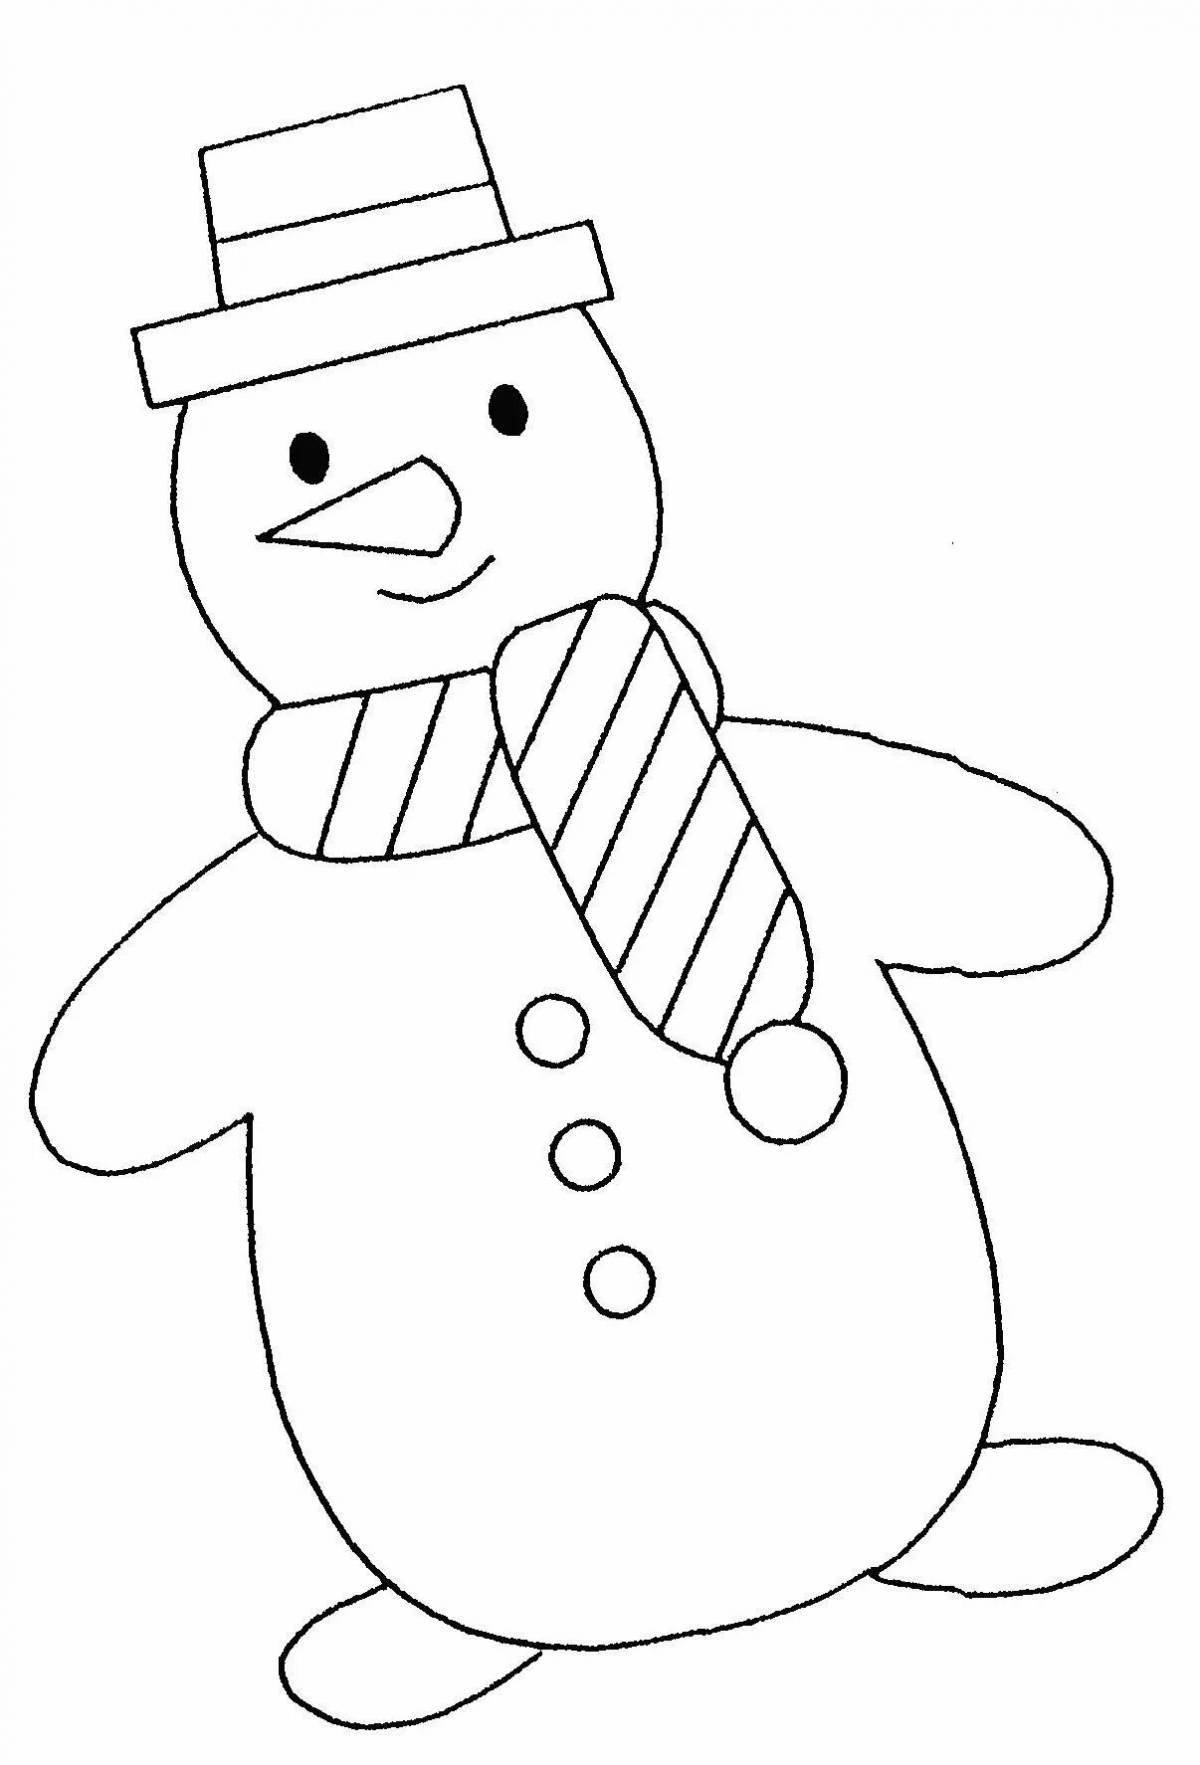 Комическая раскраска смешной снеговик для детей